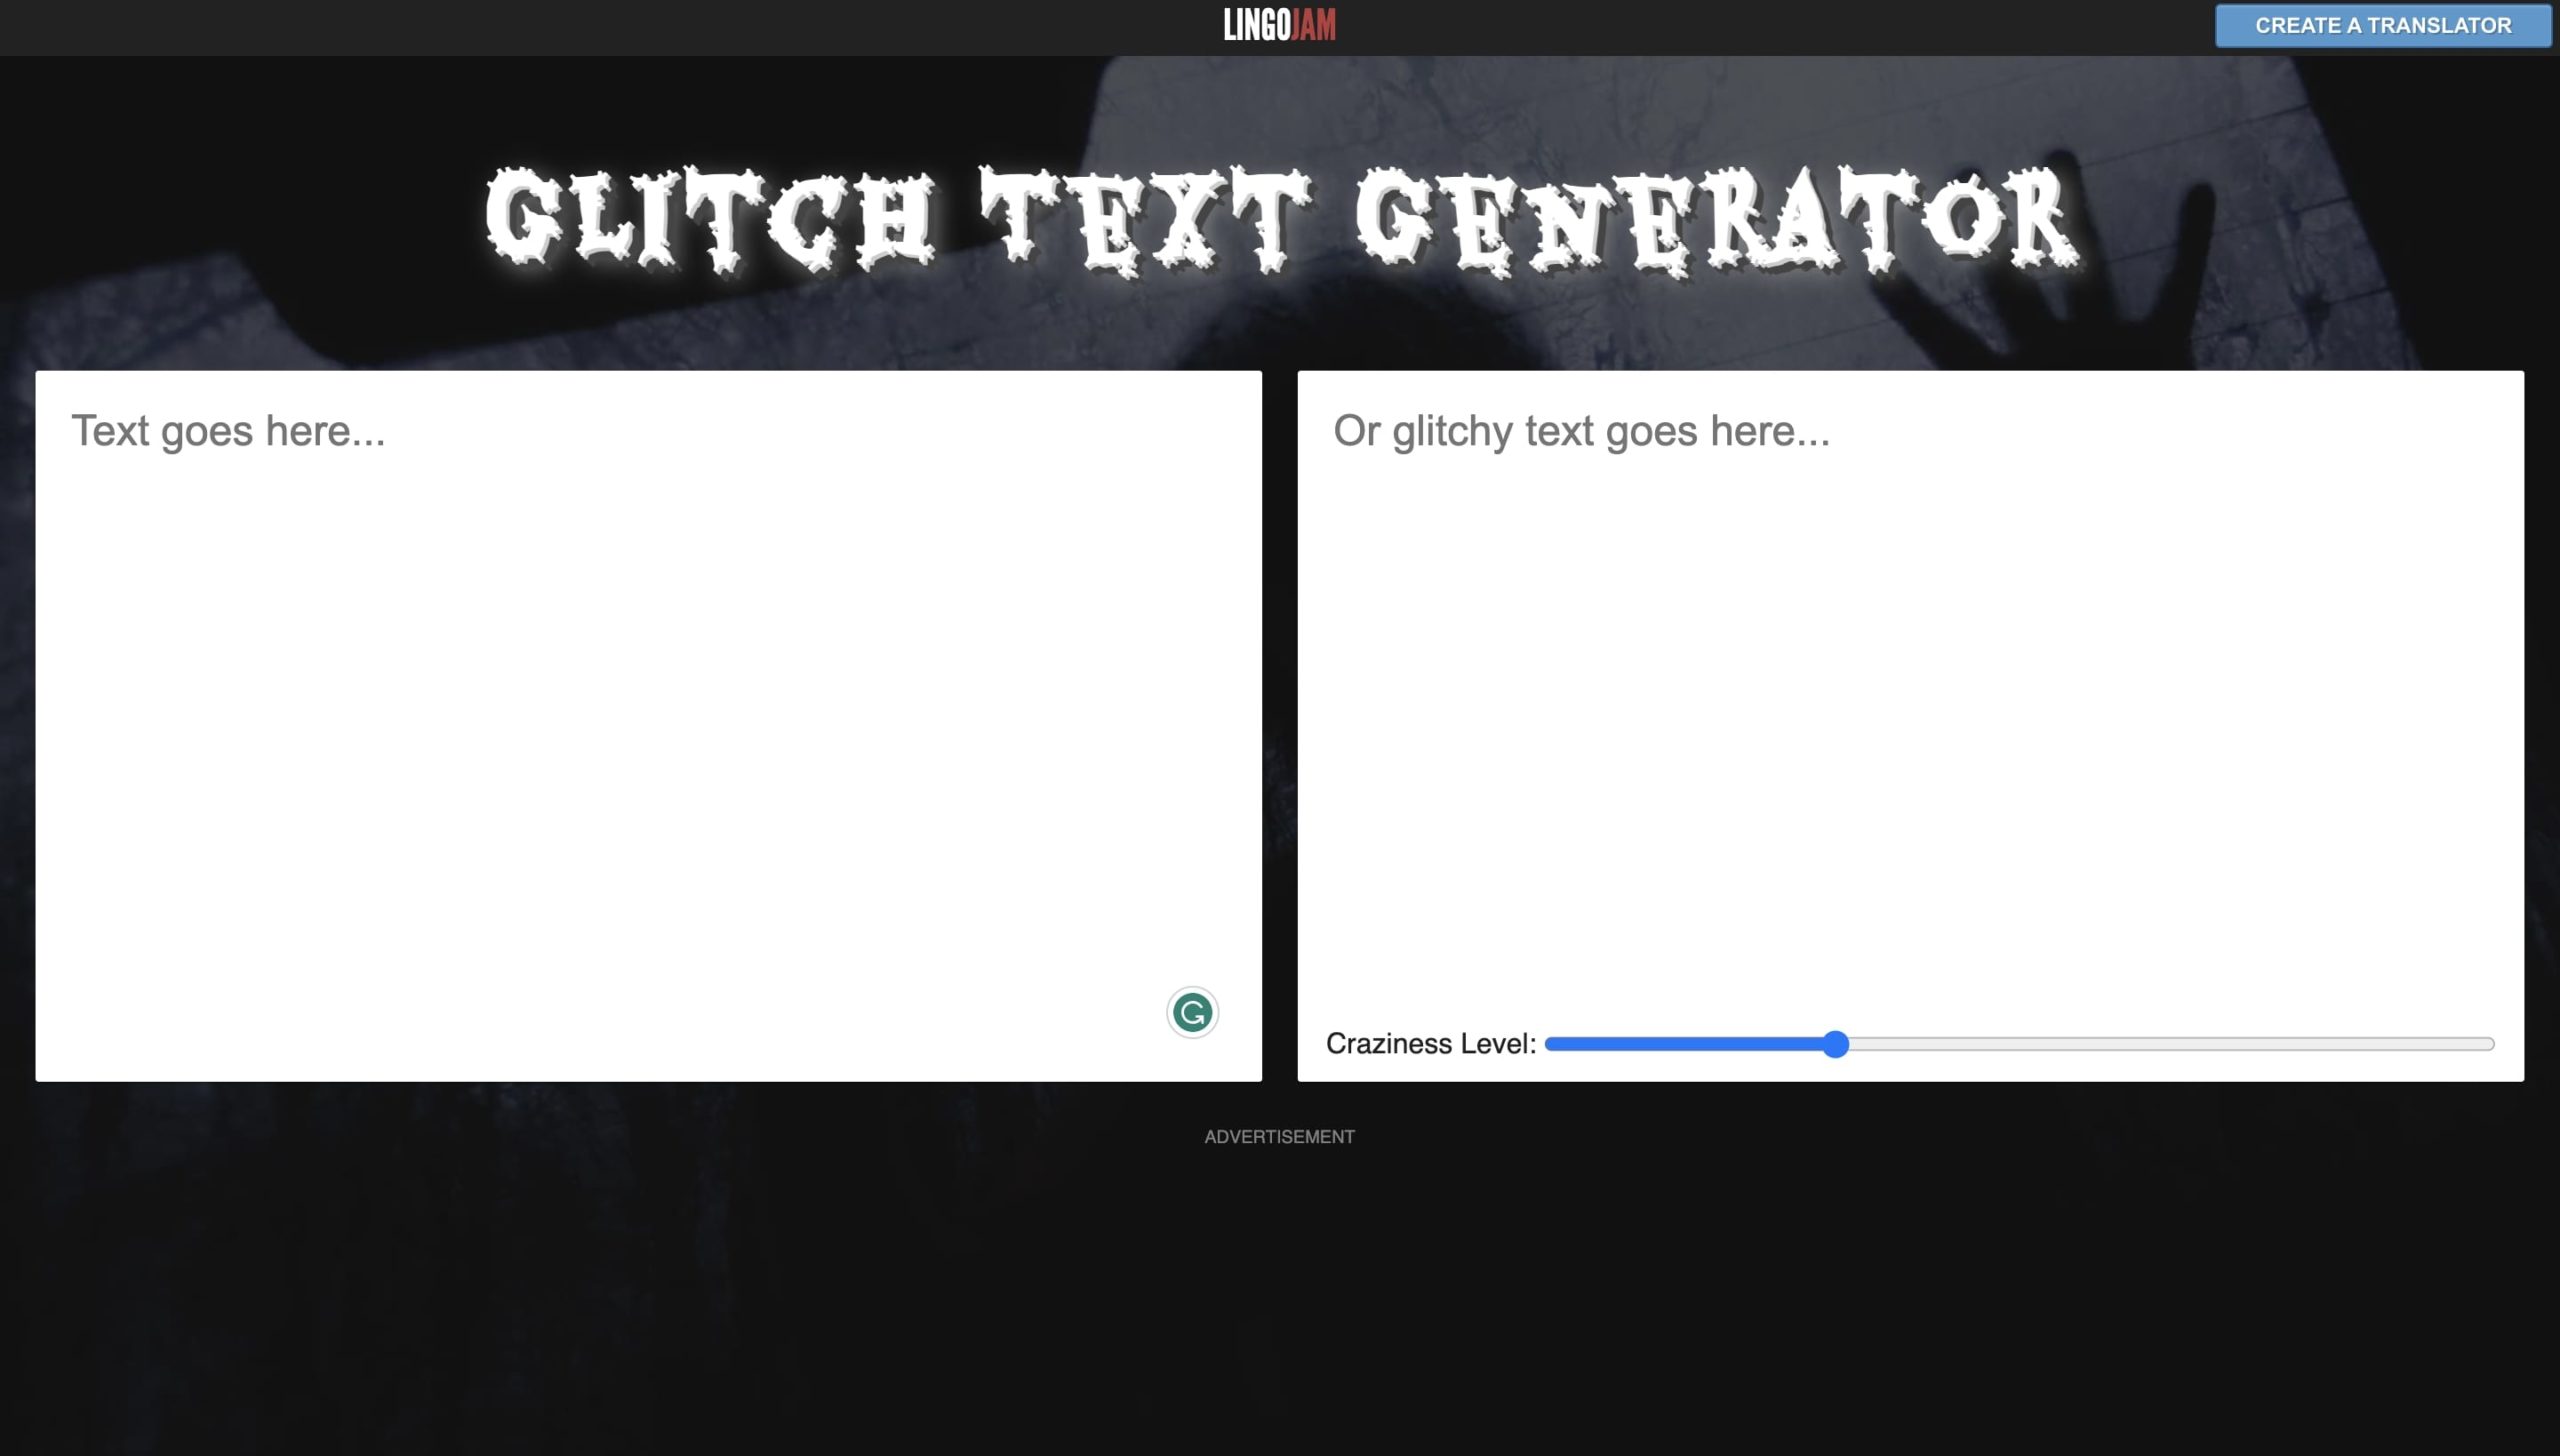 Zalgo Text Generator - Create Glitchy Text Online - Capitalize My